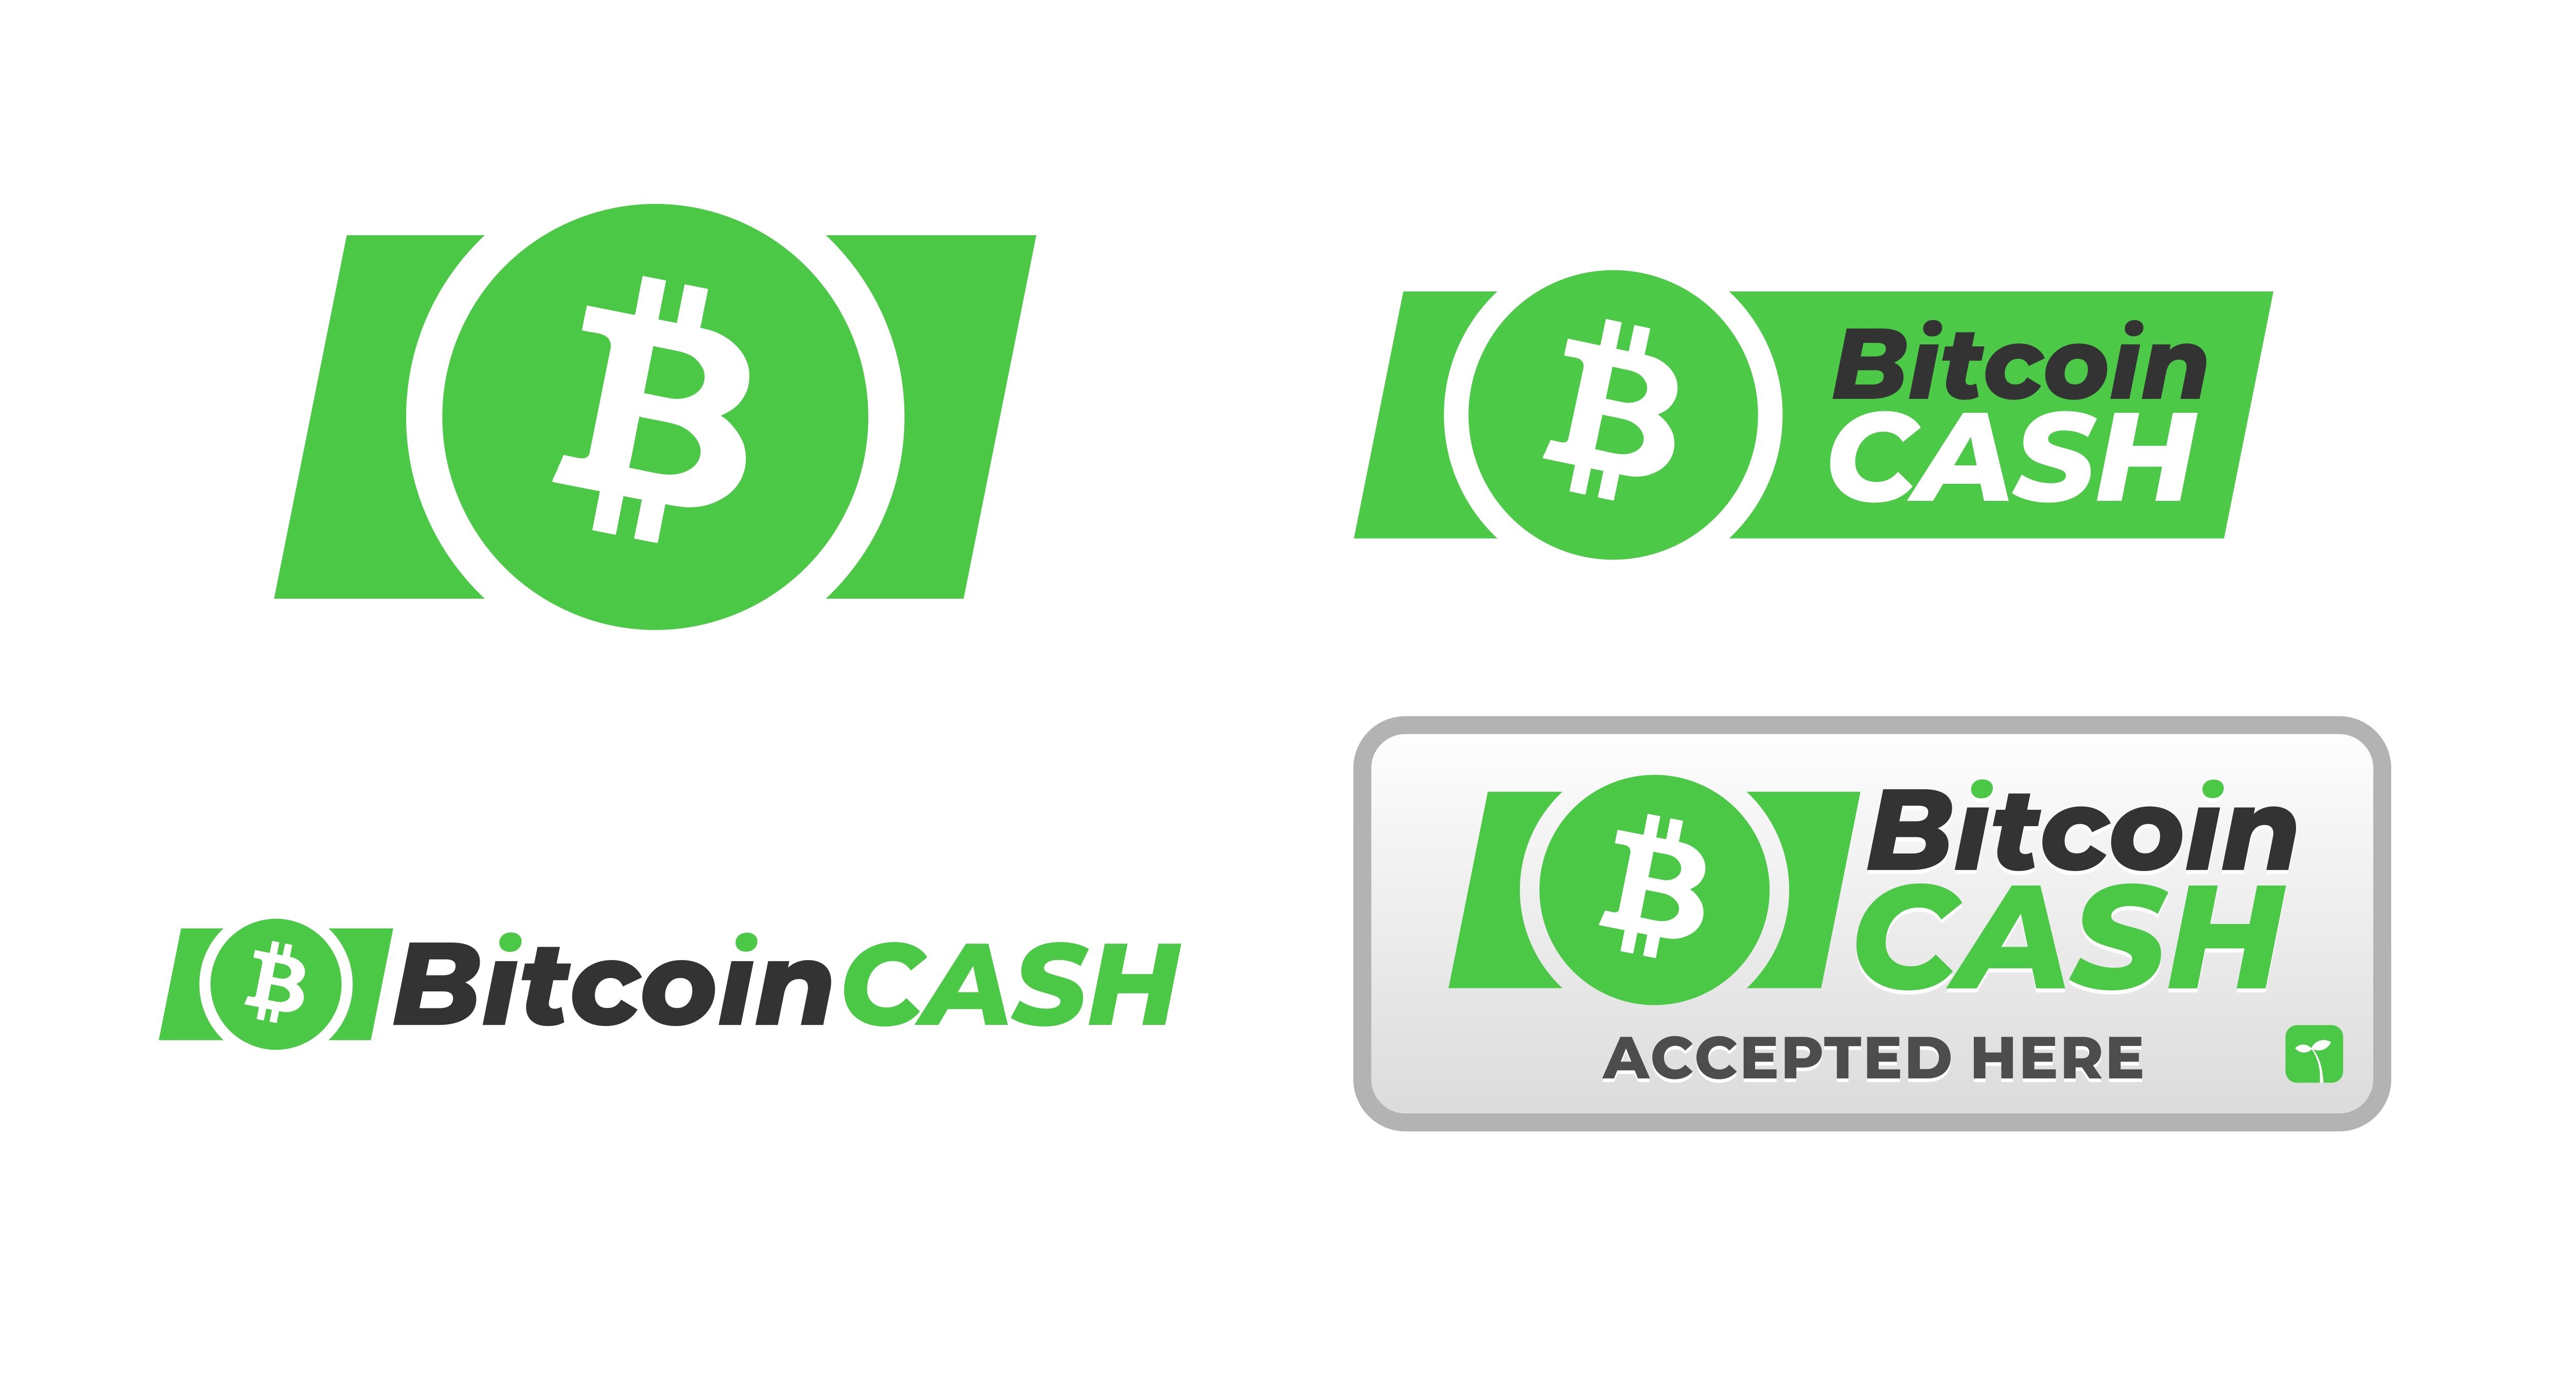 Bitcoin Cash Logo - Bitcoin Cash Logos produced by the BCF. : btc